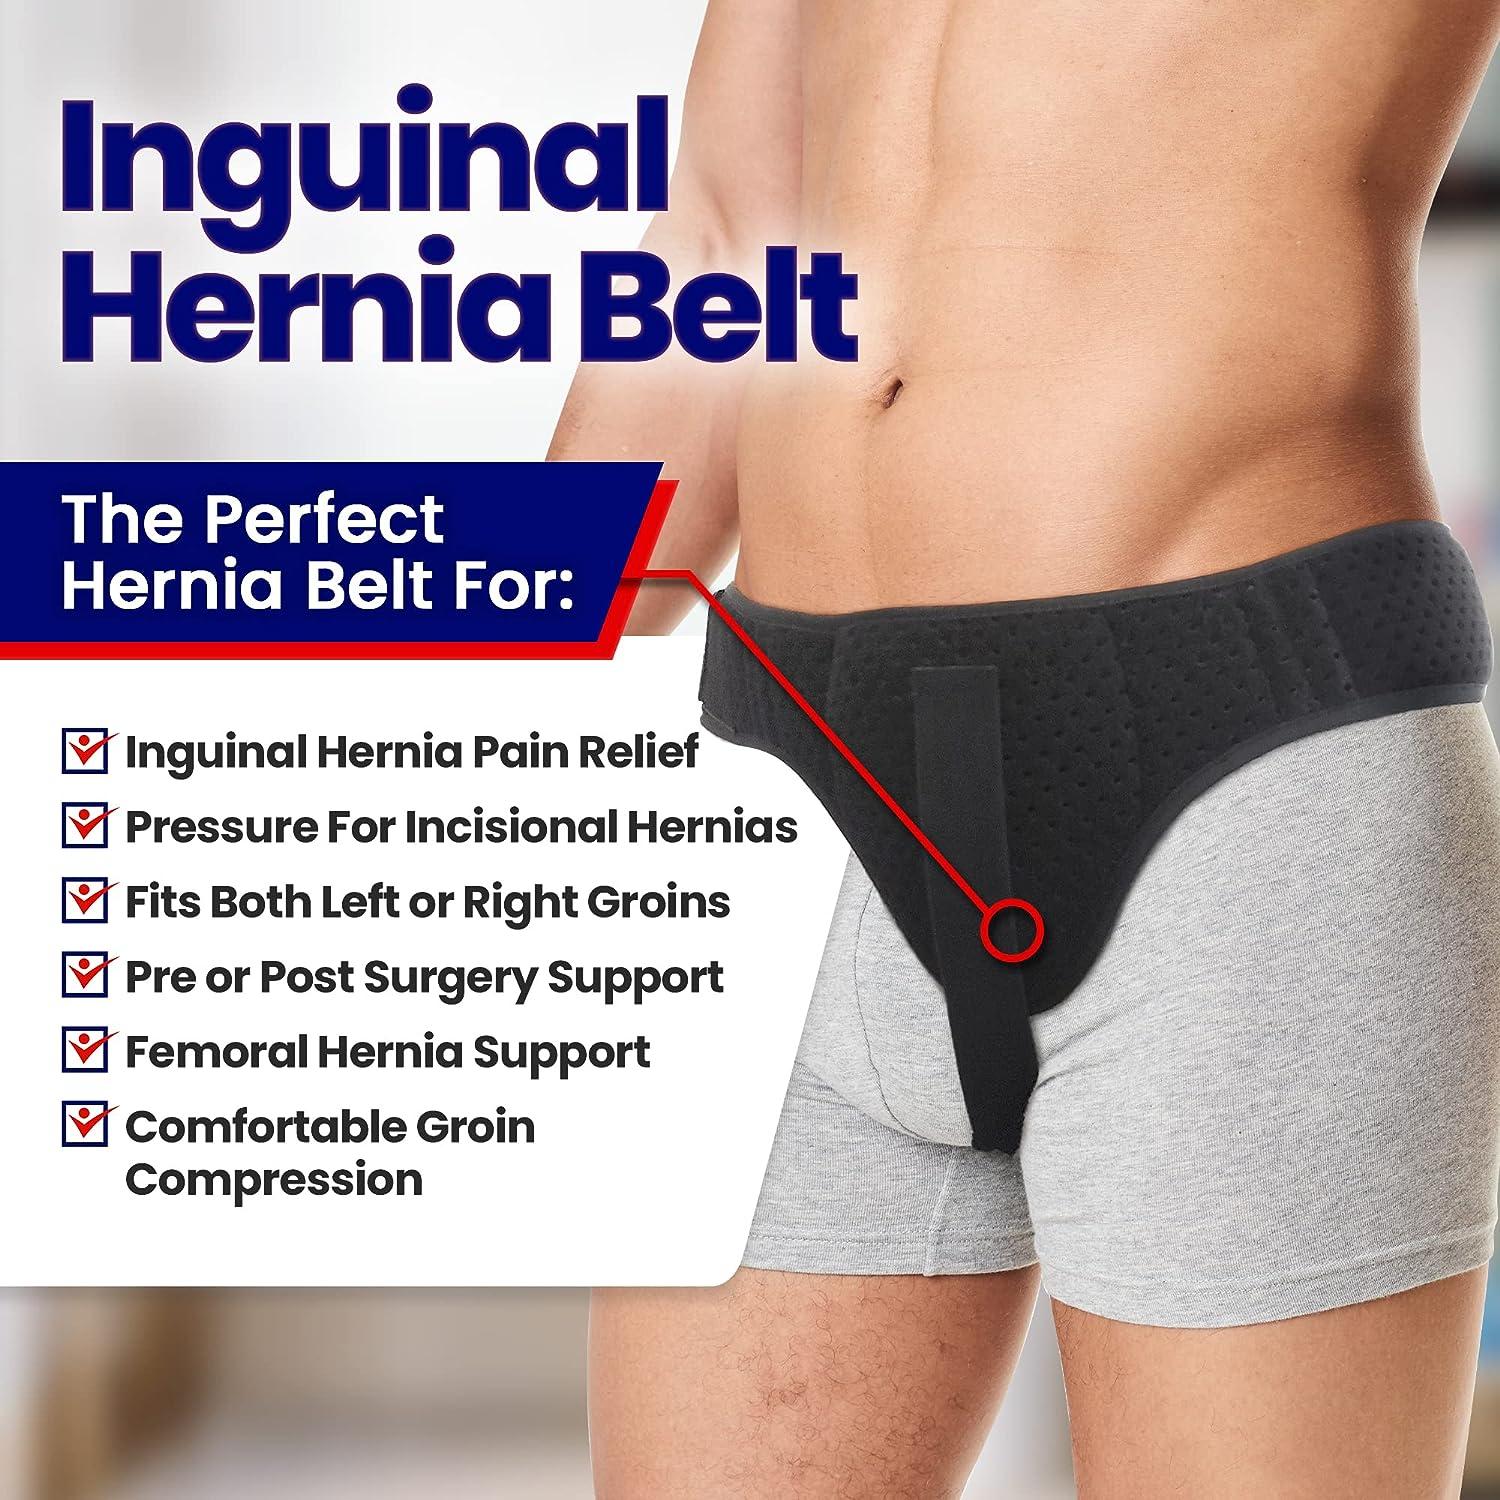 Hernia belts